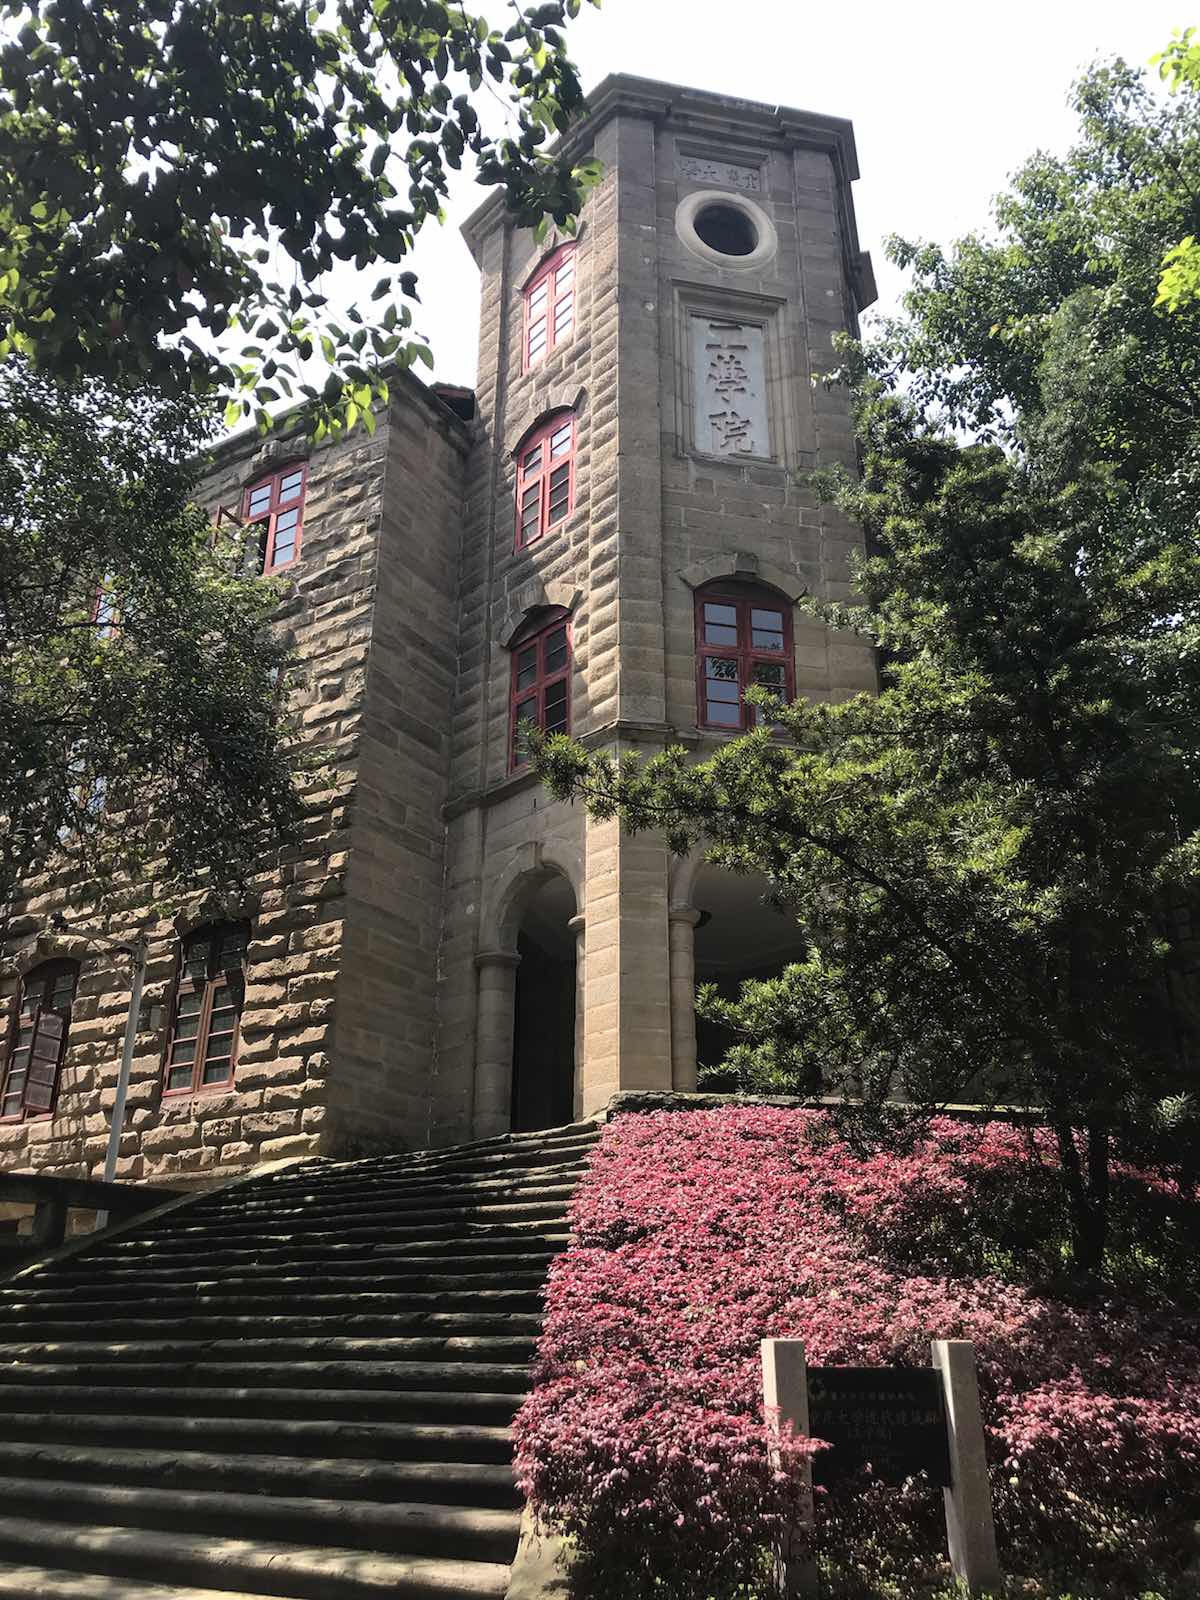 重庆大学 绿植相当茂密 像在逛公园 建筑有些年头了 比较文艺 复古风